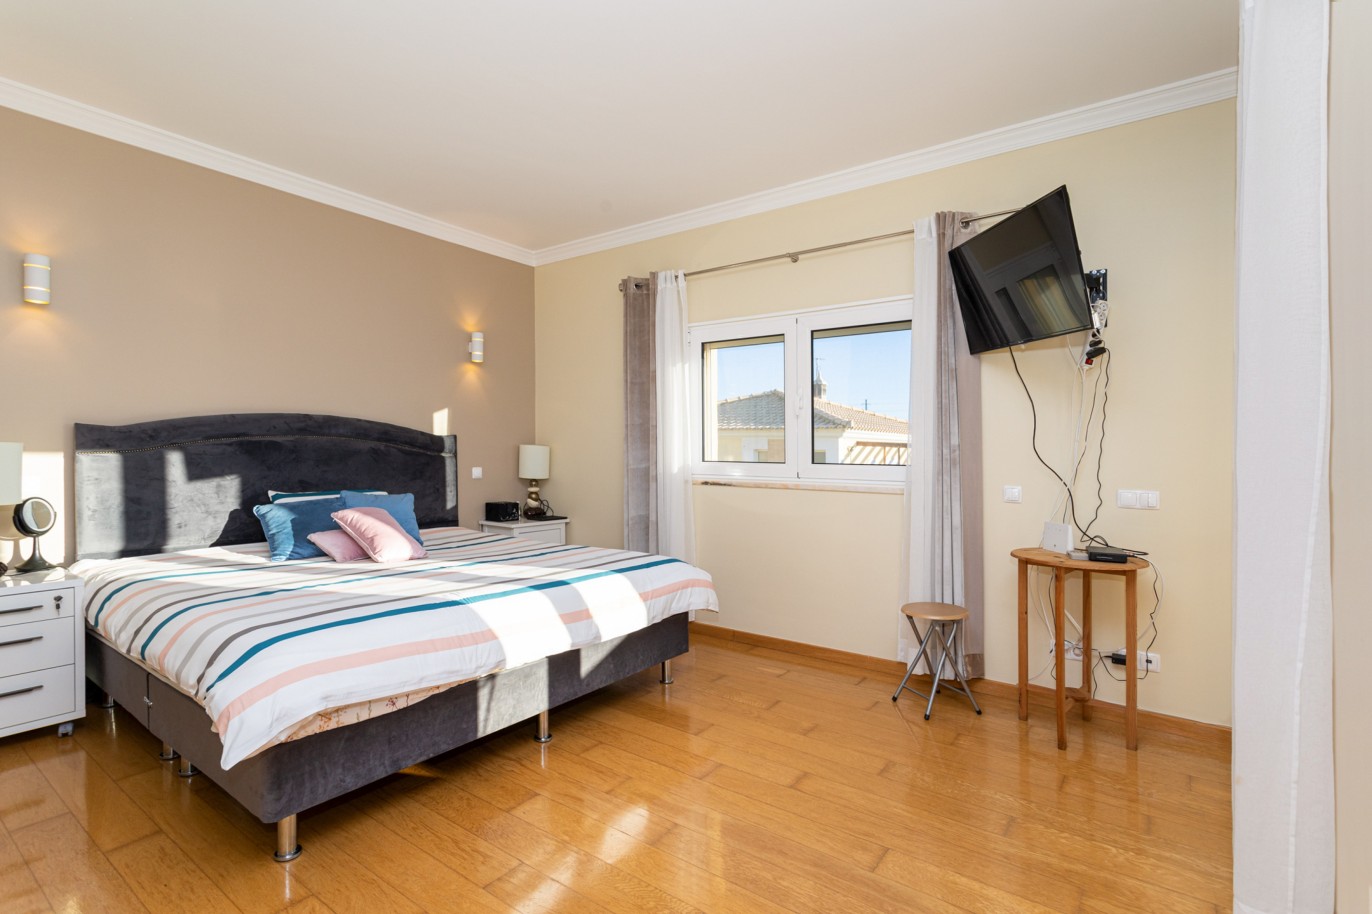 Villa de 4 dormitorios en zona de prestigio, en venta en Almancil, Algarve_217659